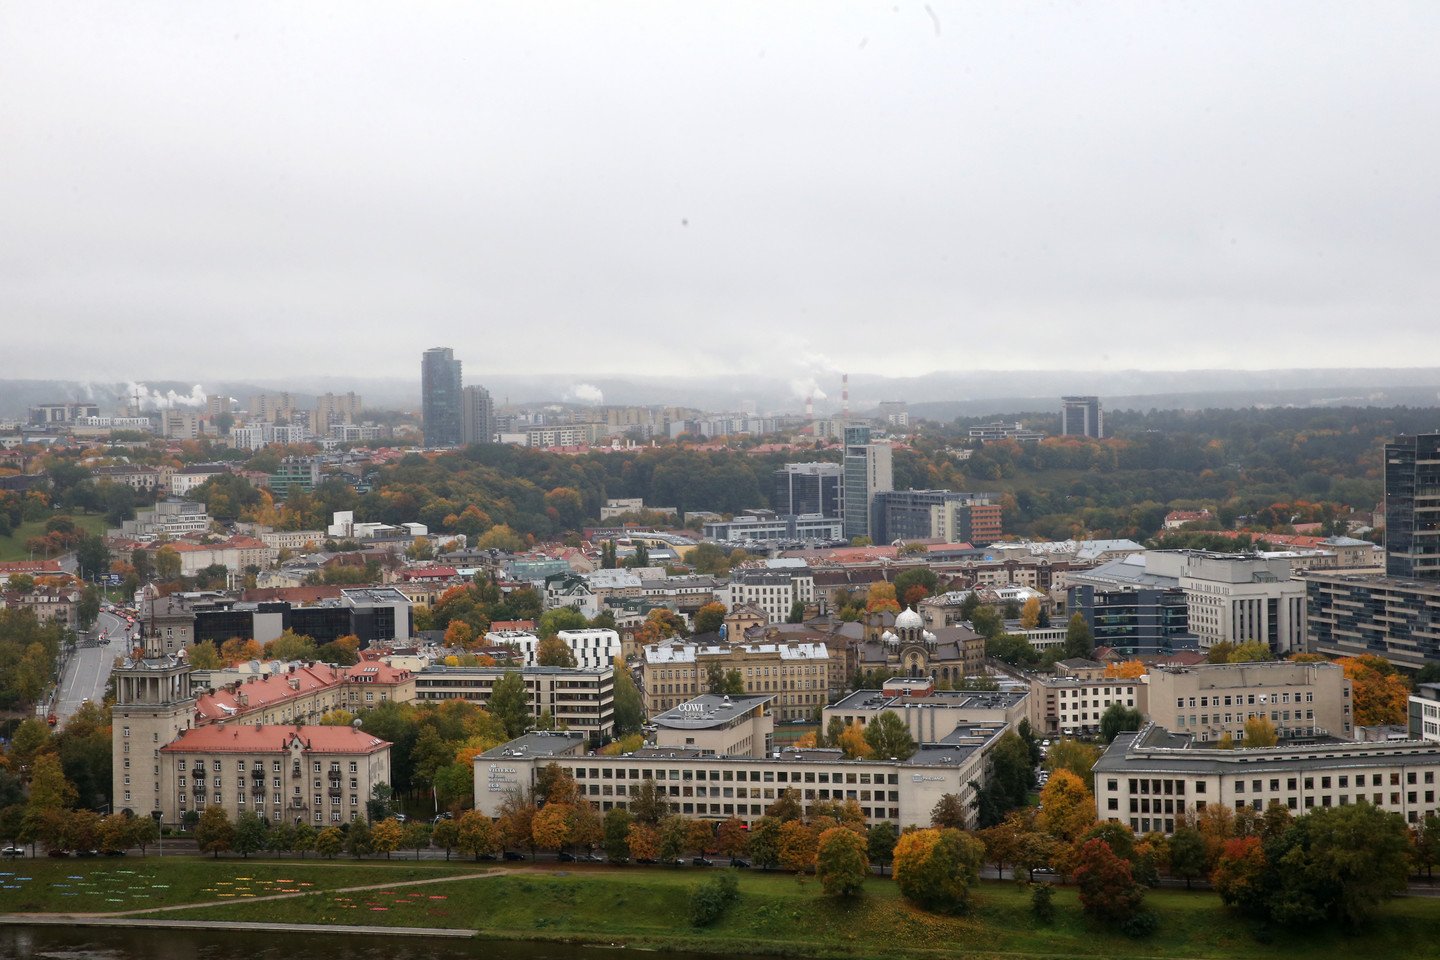 Vaizdų į sostinės panoramą kaina – vidutiniškai 3,5 tūkst. eurų už kv. metrą.<br> R.Danisevičiaus nuotr.